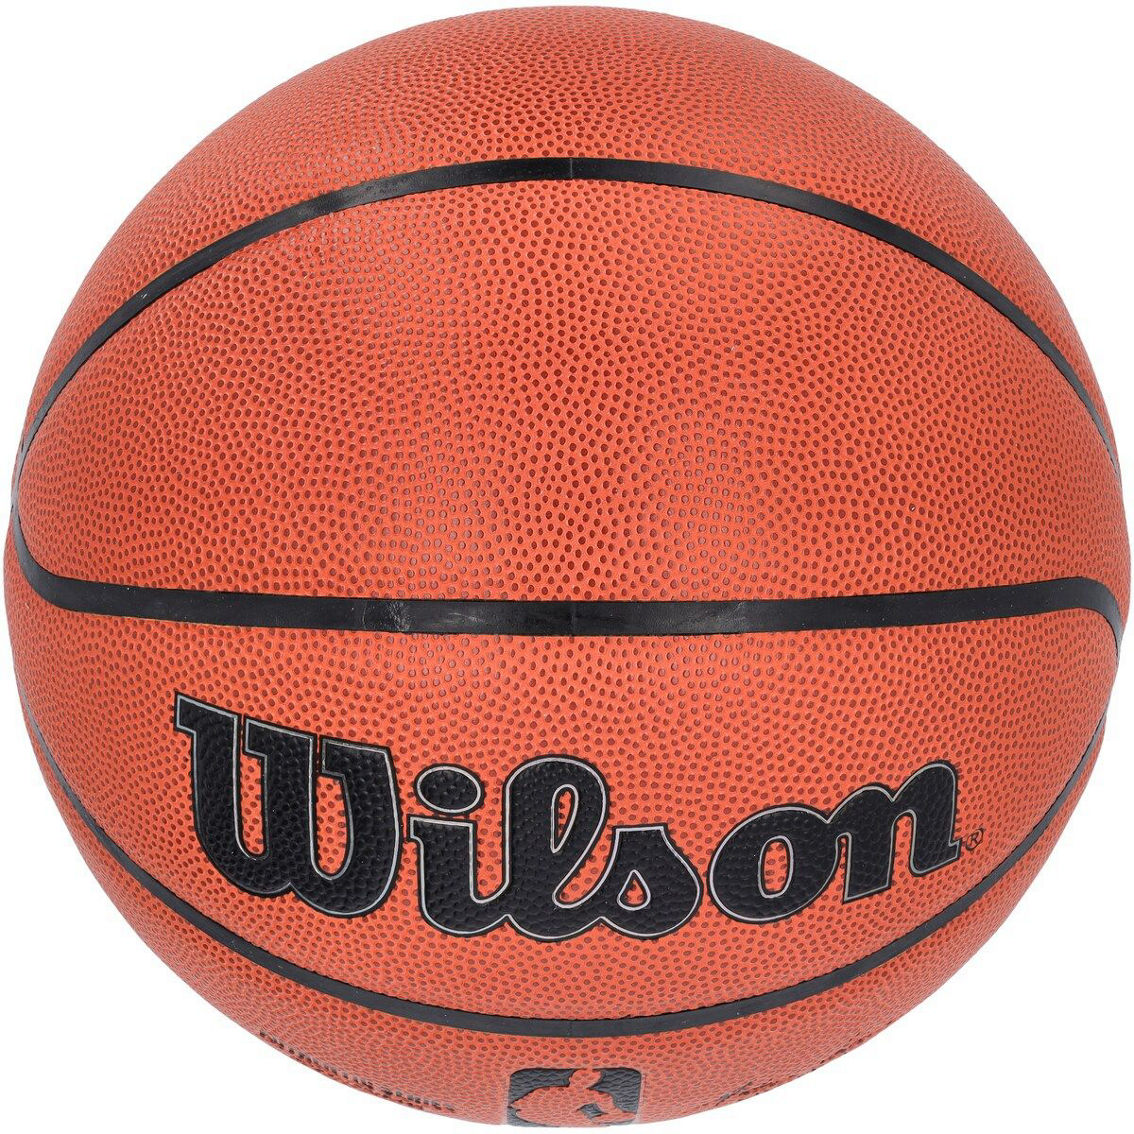 Wilson Wilson NBA Authentic Series Indoor/Outdoor Basketball - Image 3 of 4